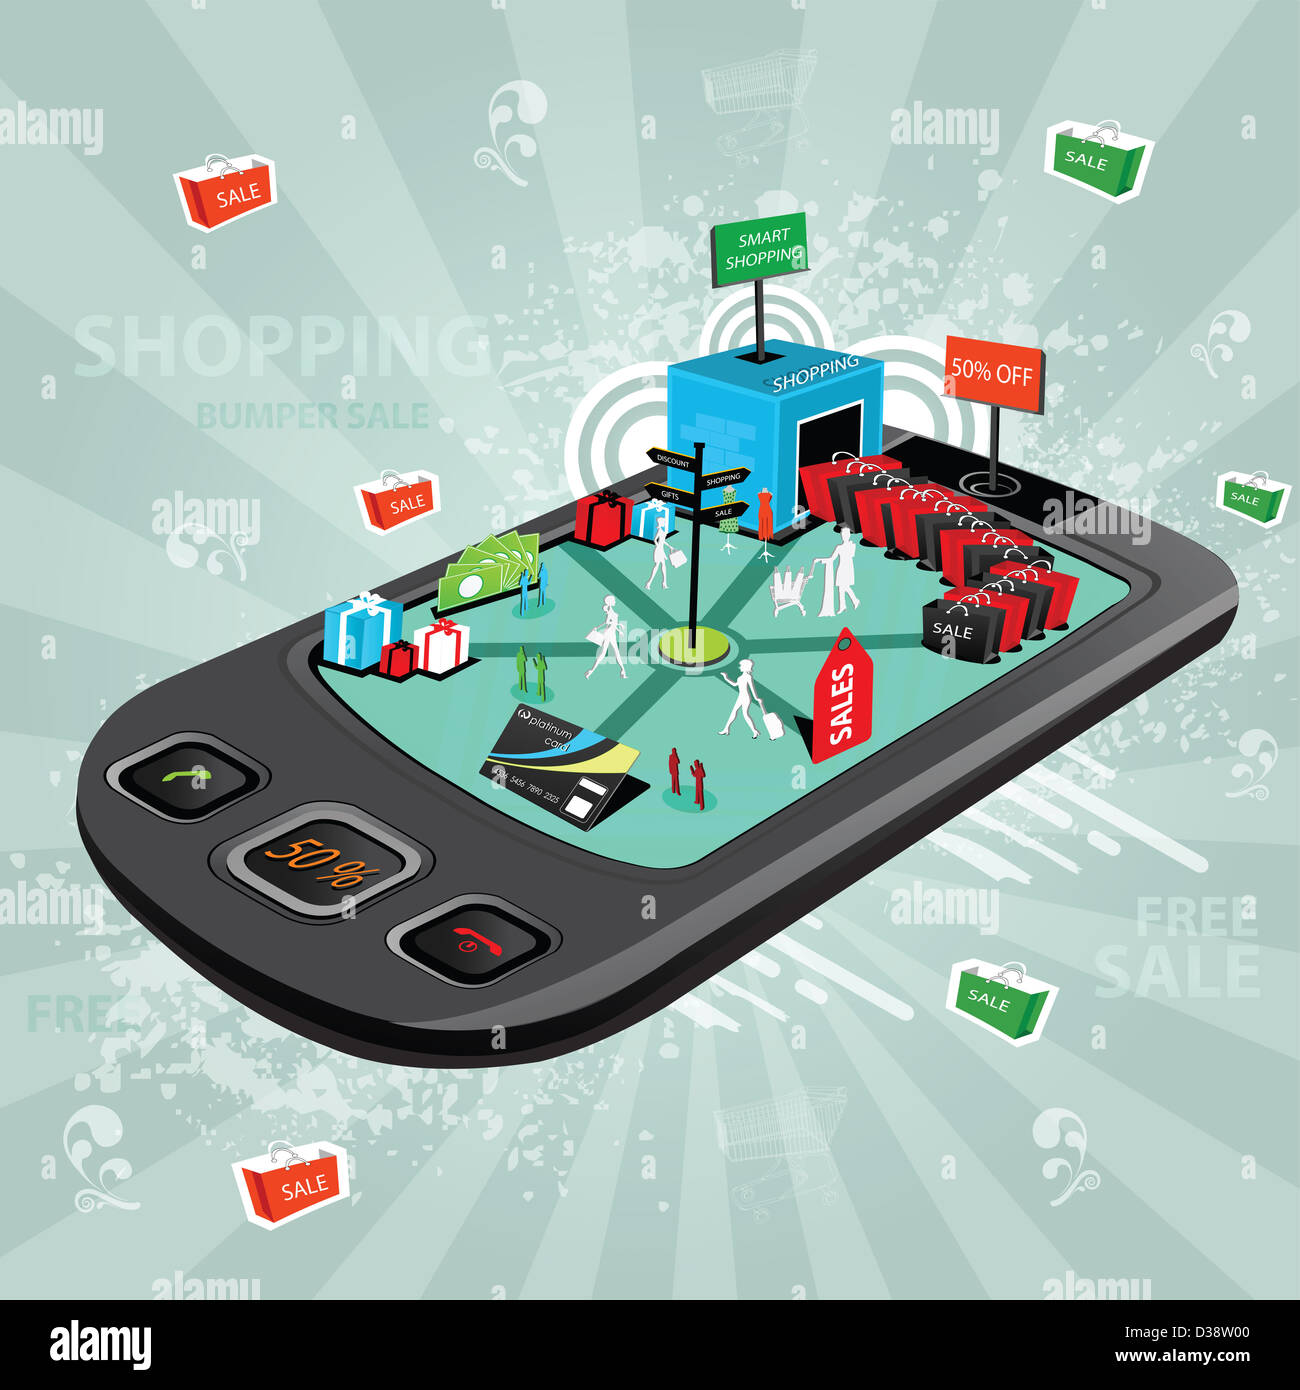 Représentation d'illustration montrant l'utilisation d'un téléphone mobile pour e-shopping Banque D'Images